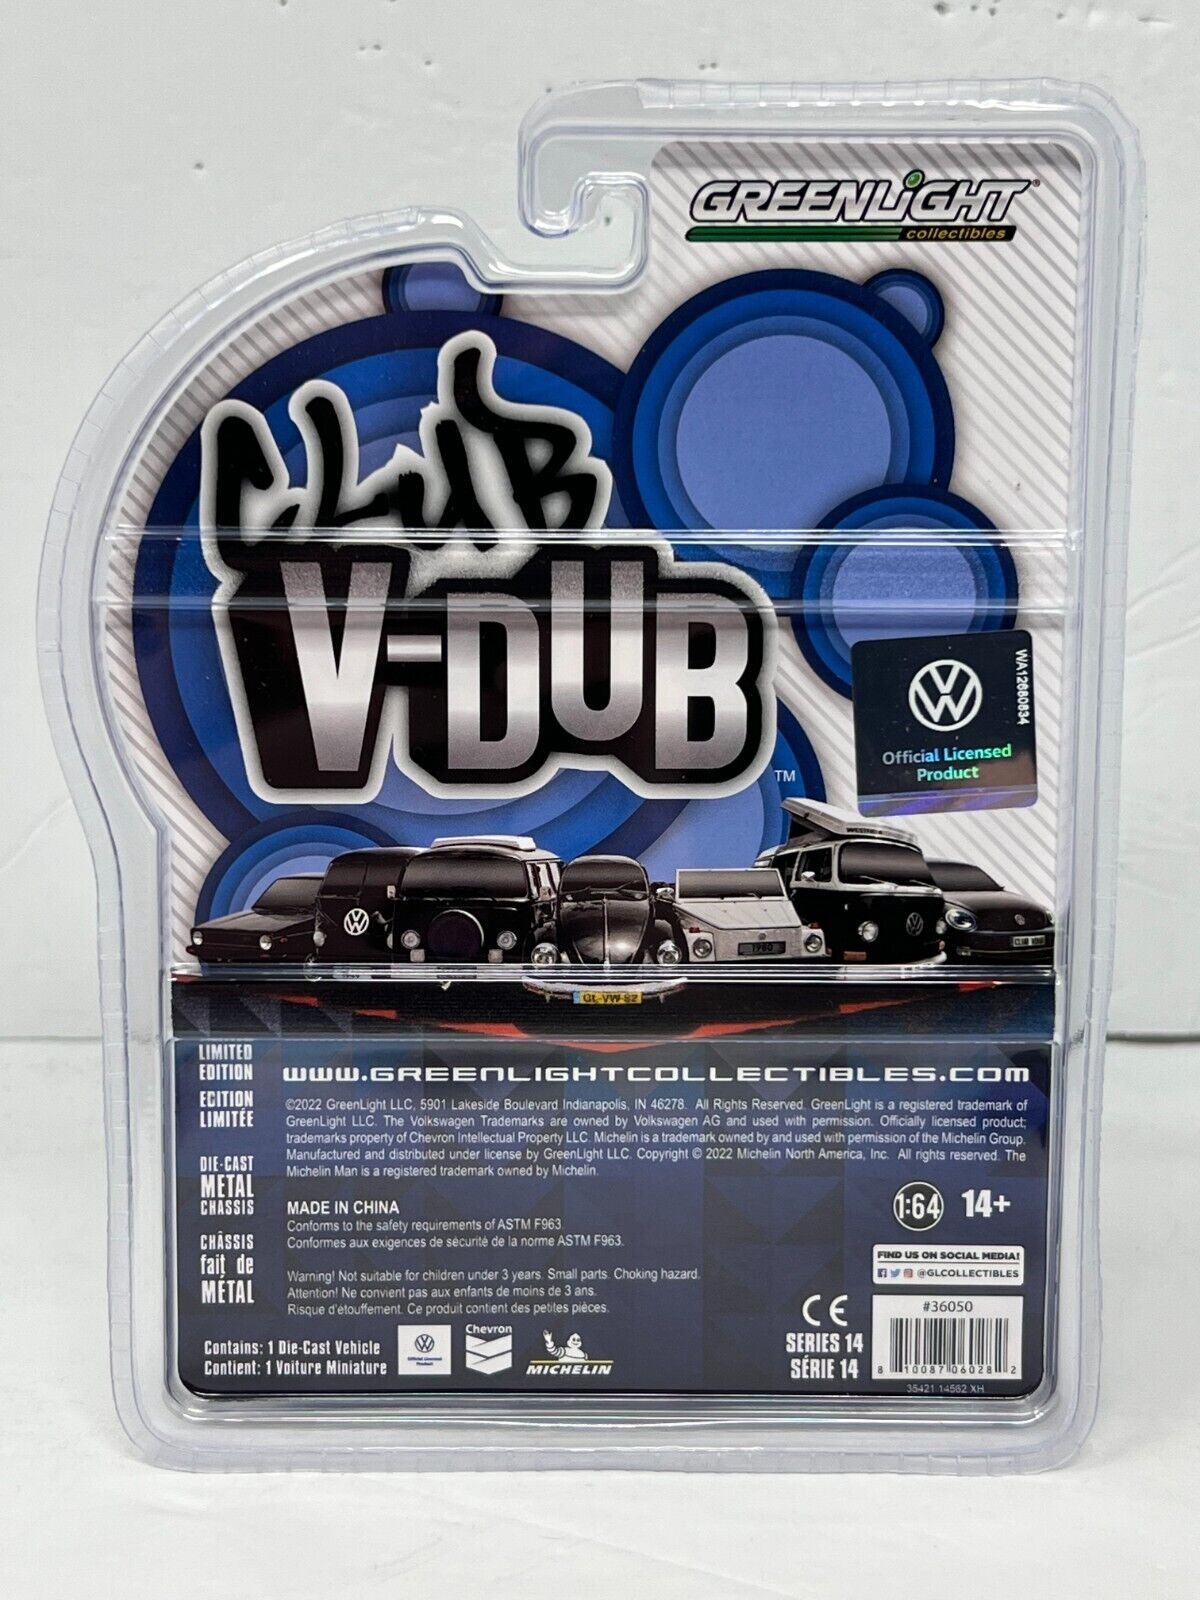 Greenlight Club V-Dub 1975 Volkswagen Rabbit 1:64 Diecast